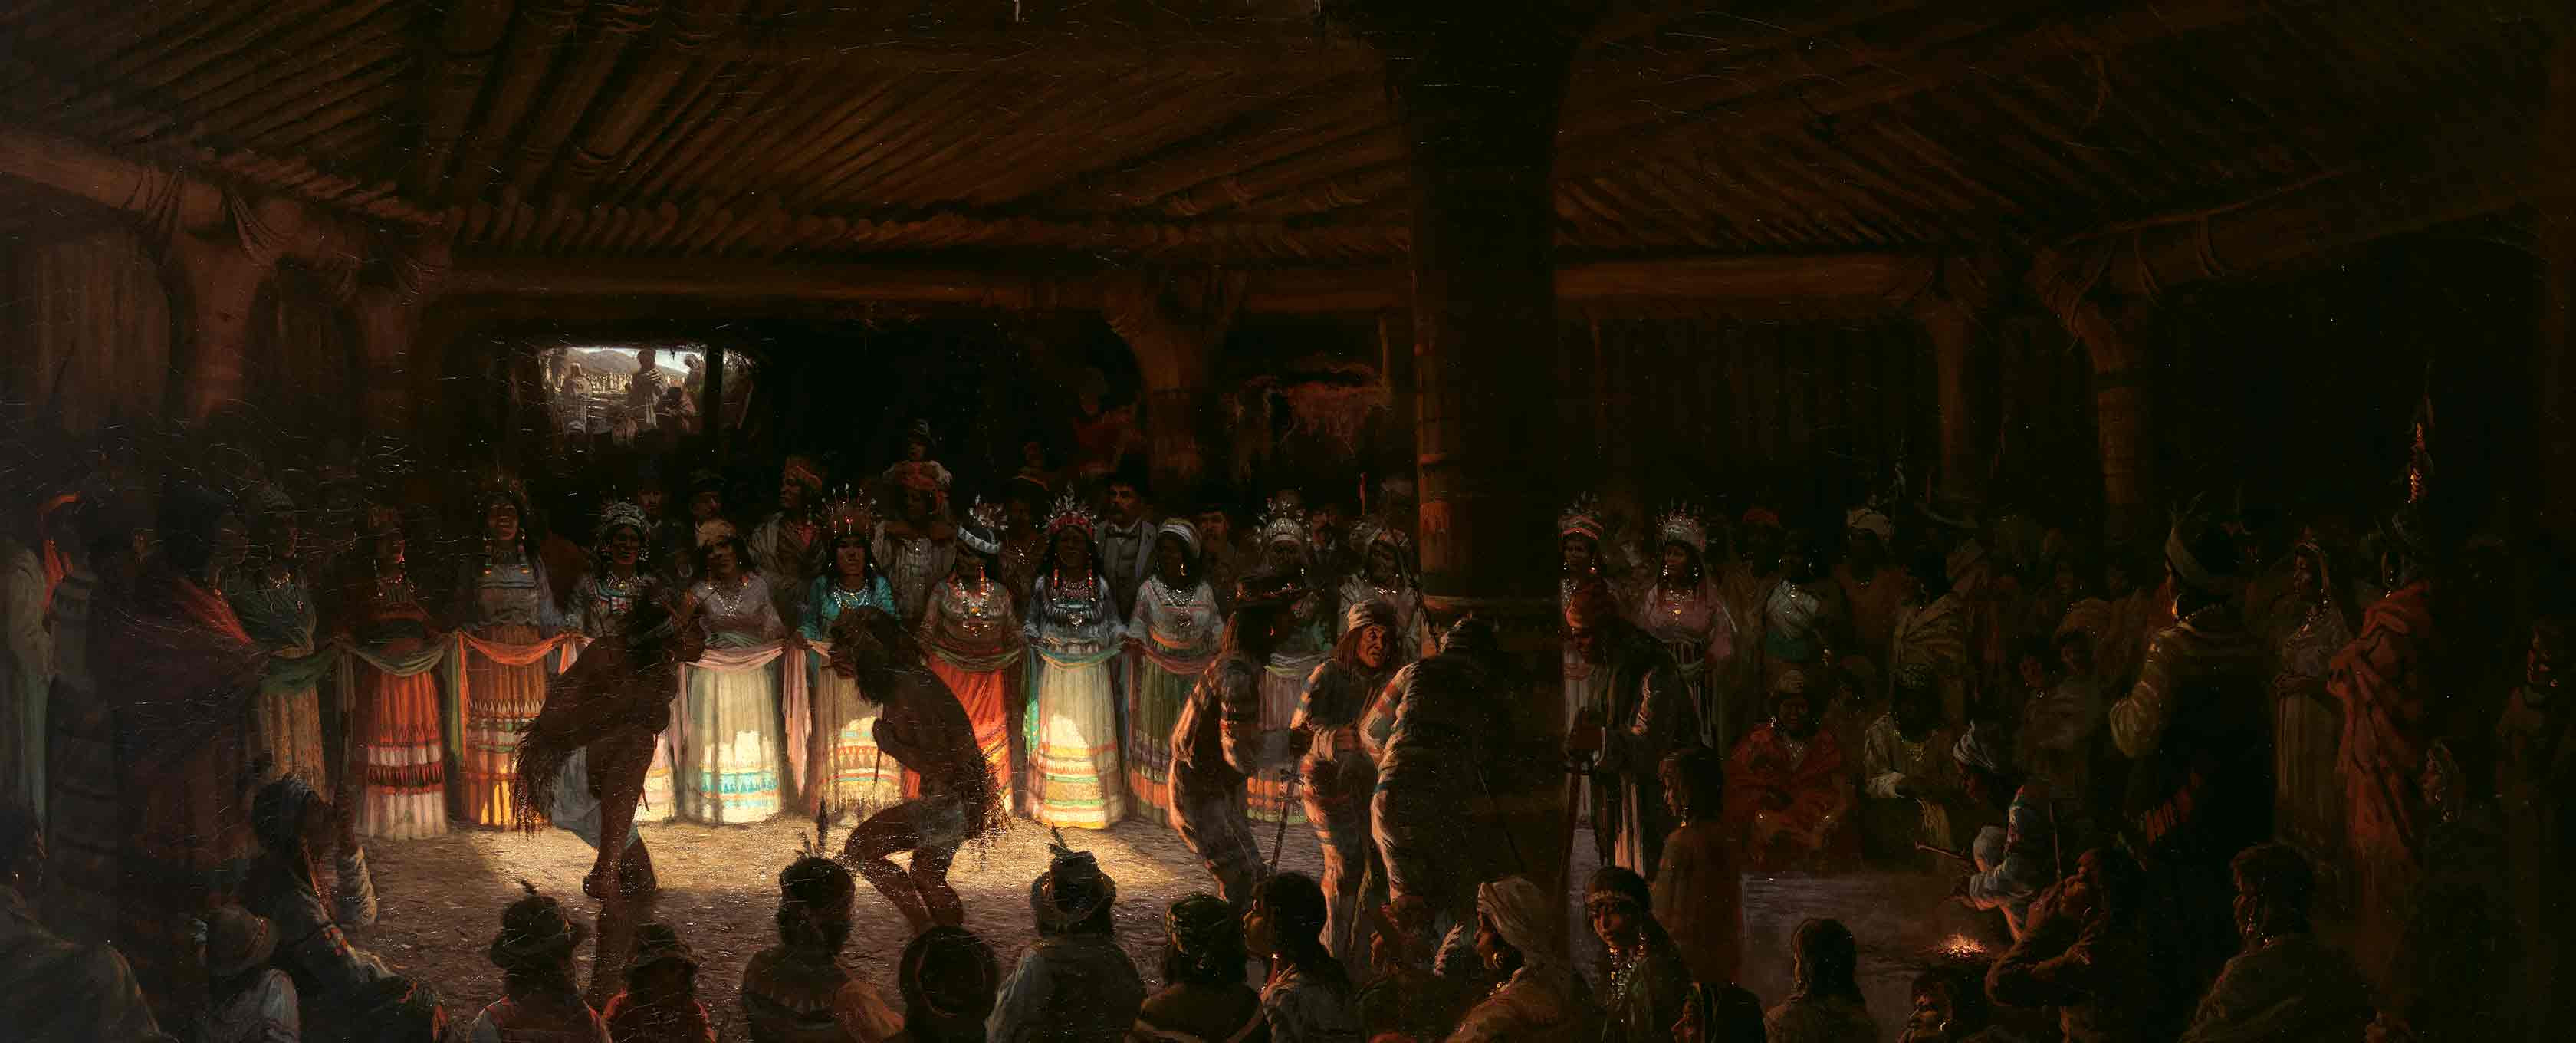 Dentro de um interior mal iluminado estão quase cem figuras, incluindo dançarinos, músicos e artistas Pomo, bem como espectadores não-nativos.